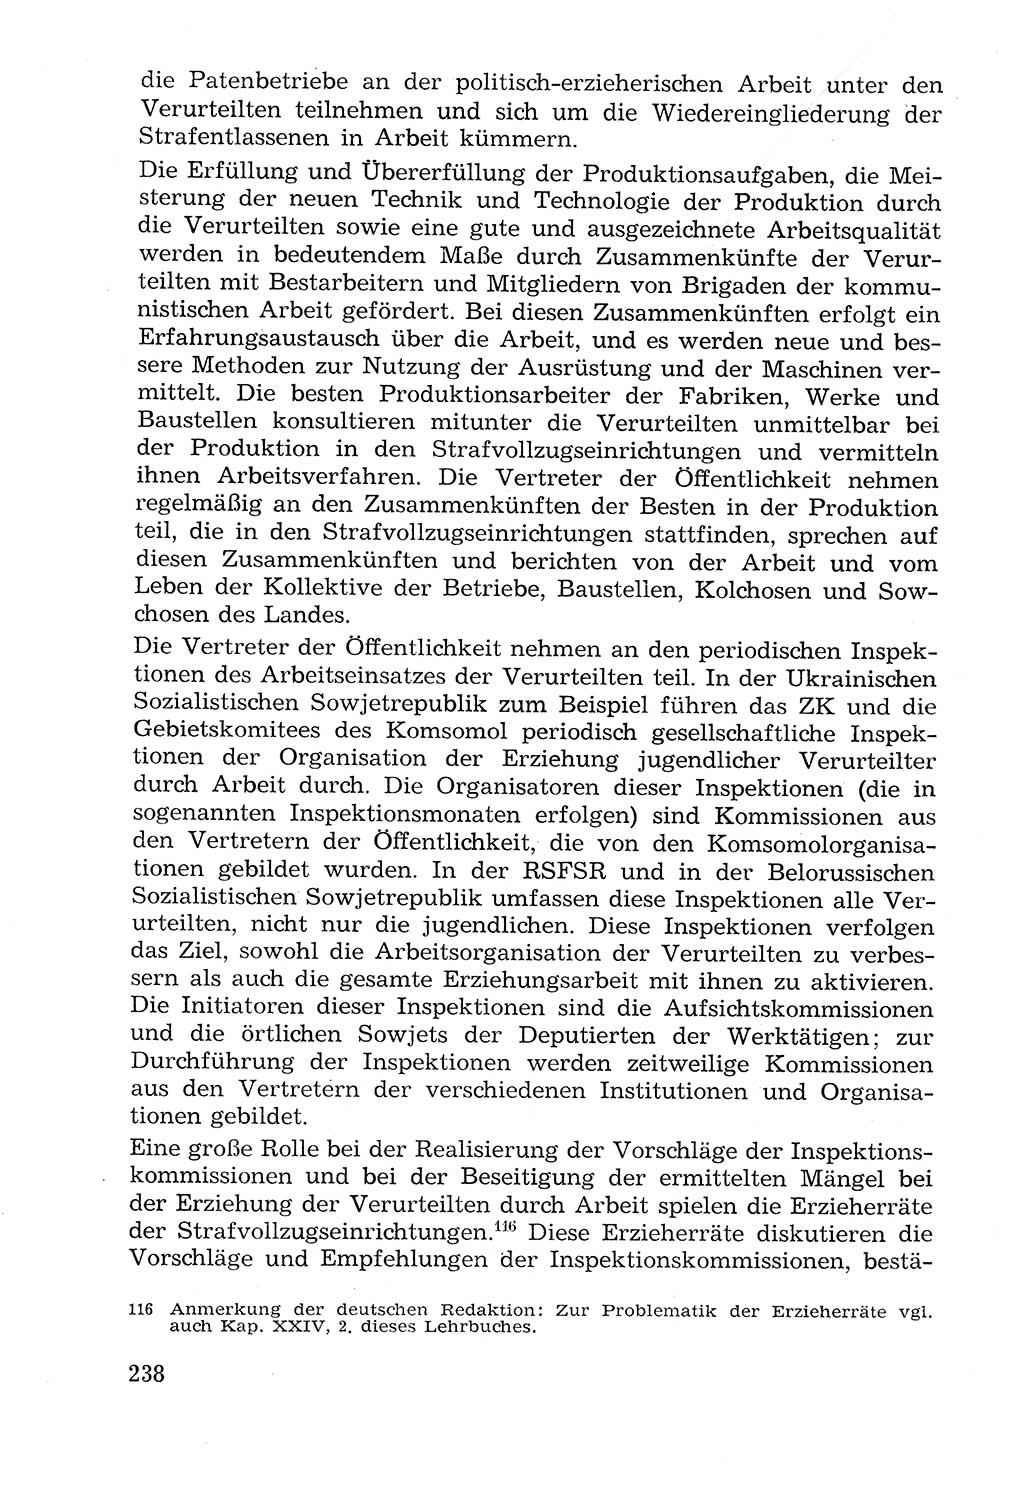 Lehrbuch der Strafvollzugspädagogik [Deutsche Demokratische Republik (DDR)] 1969, Seite 238 (Lb. SV-Pd. DDR 1969, S. 238)